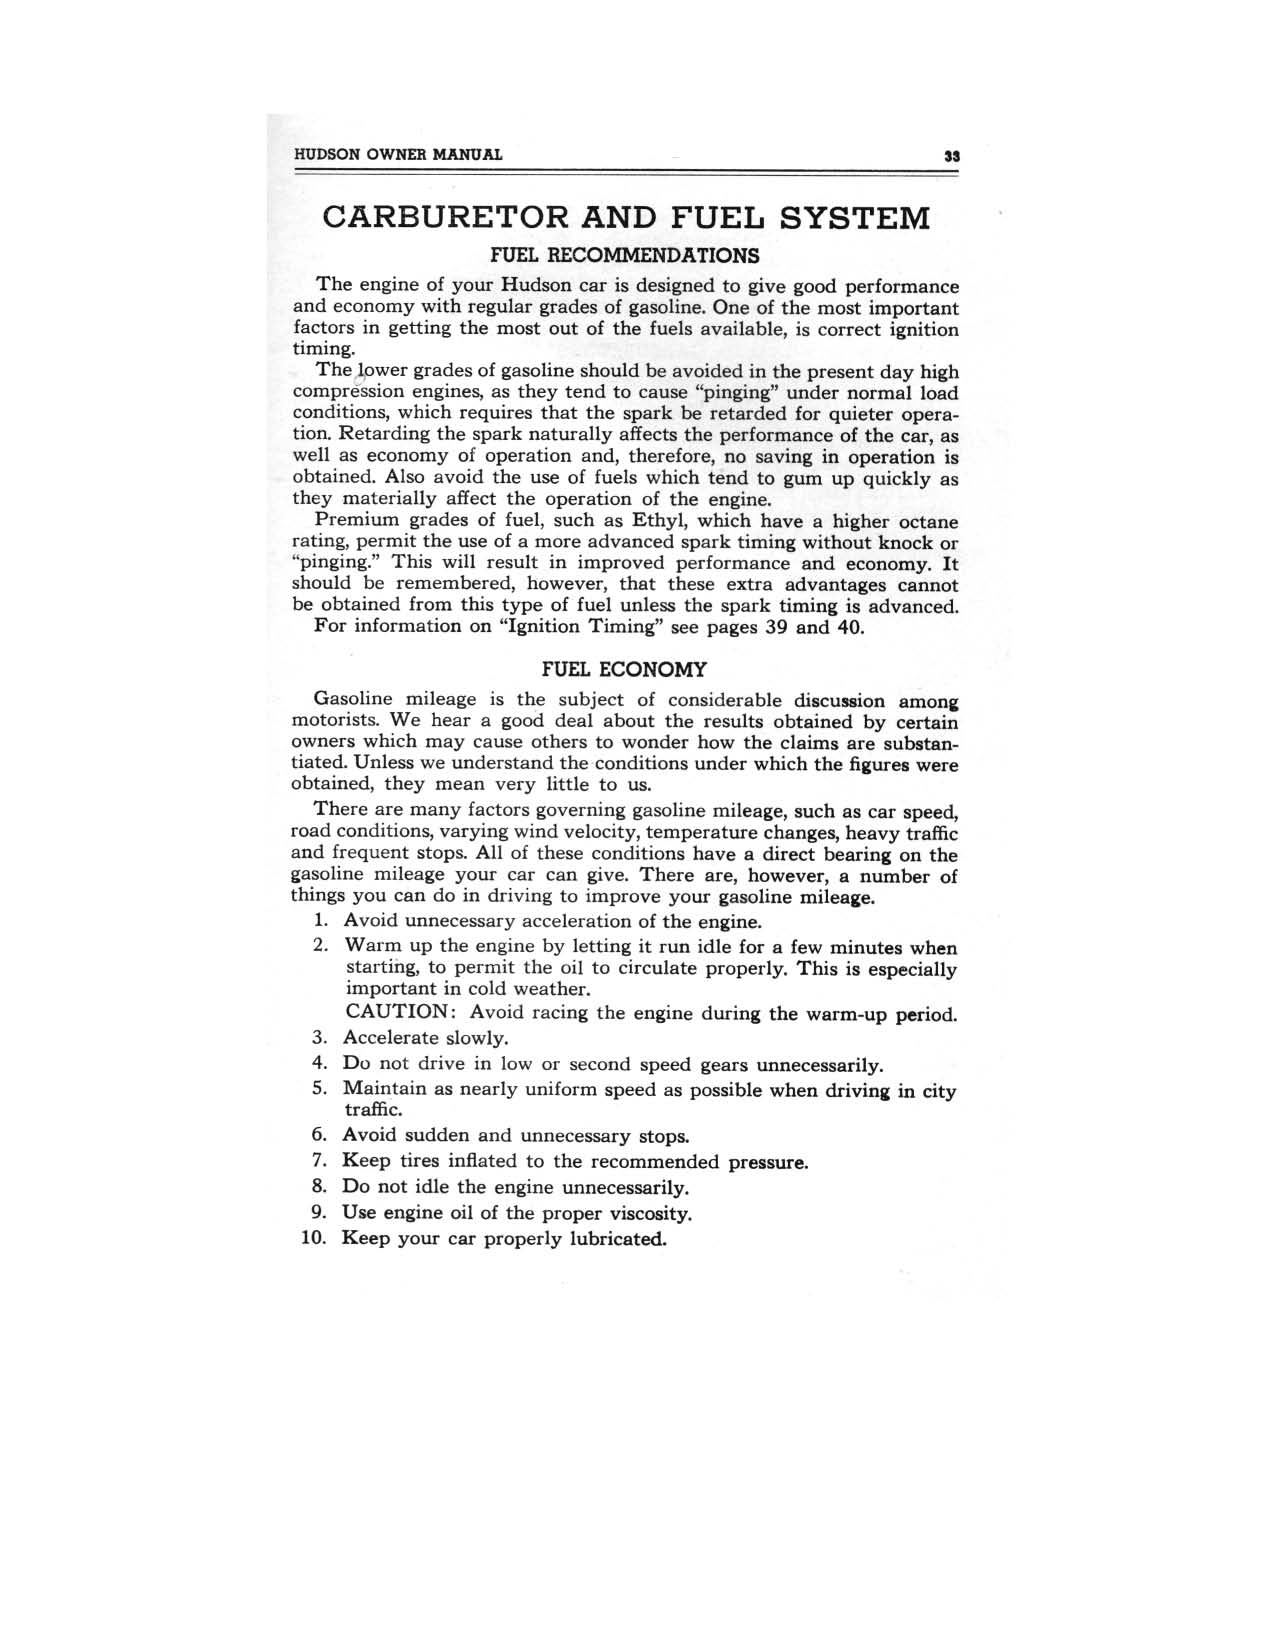 1949 Hudson Owners Manual-35